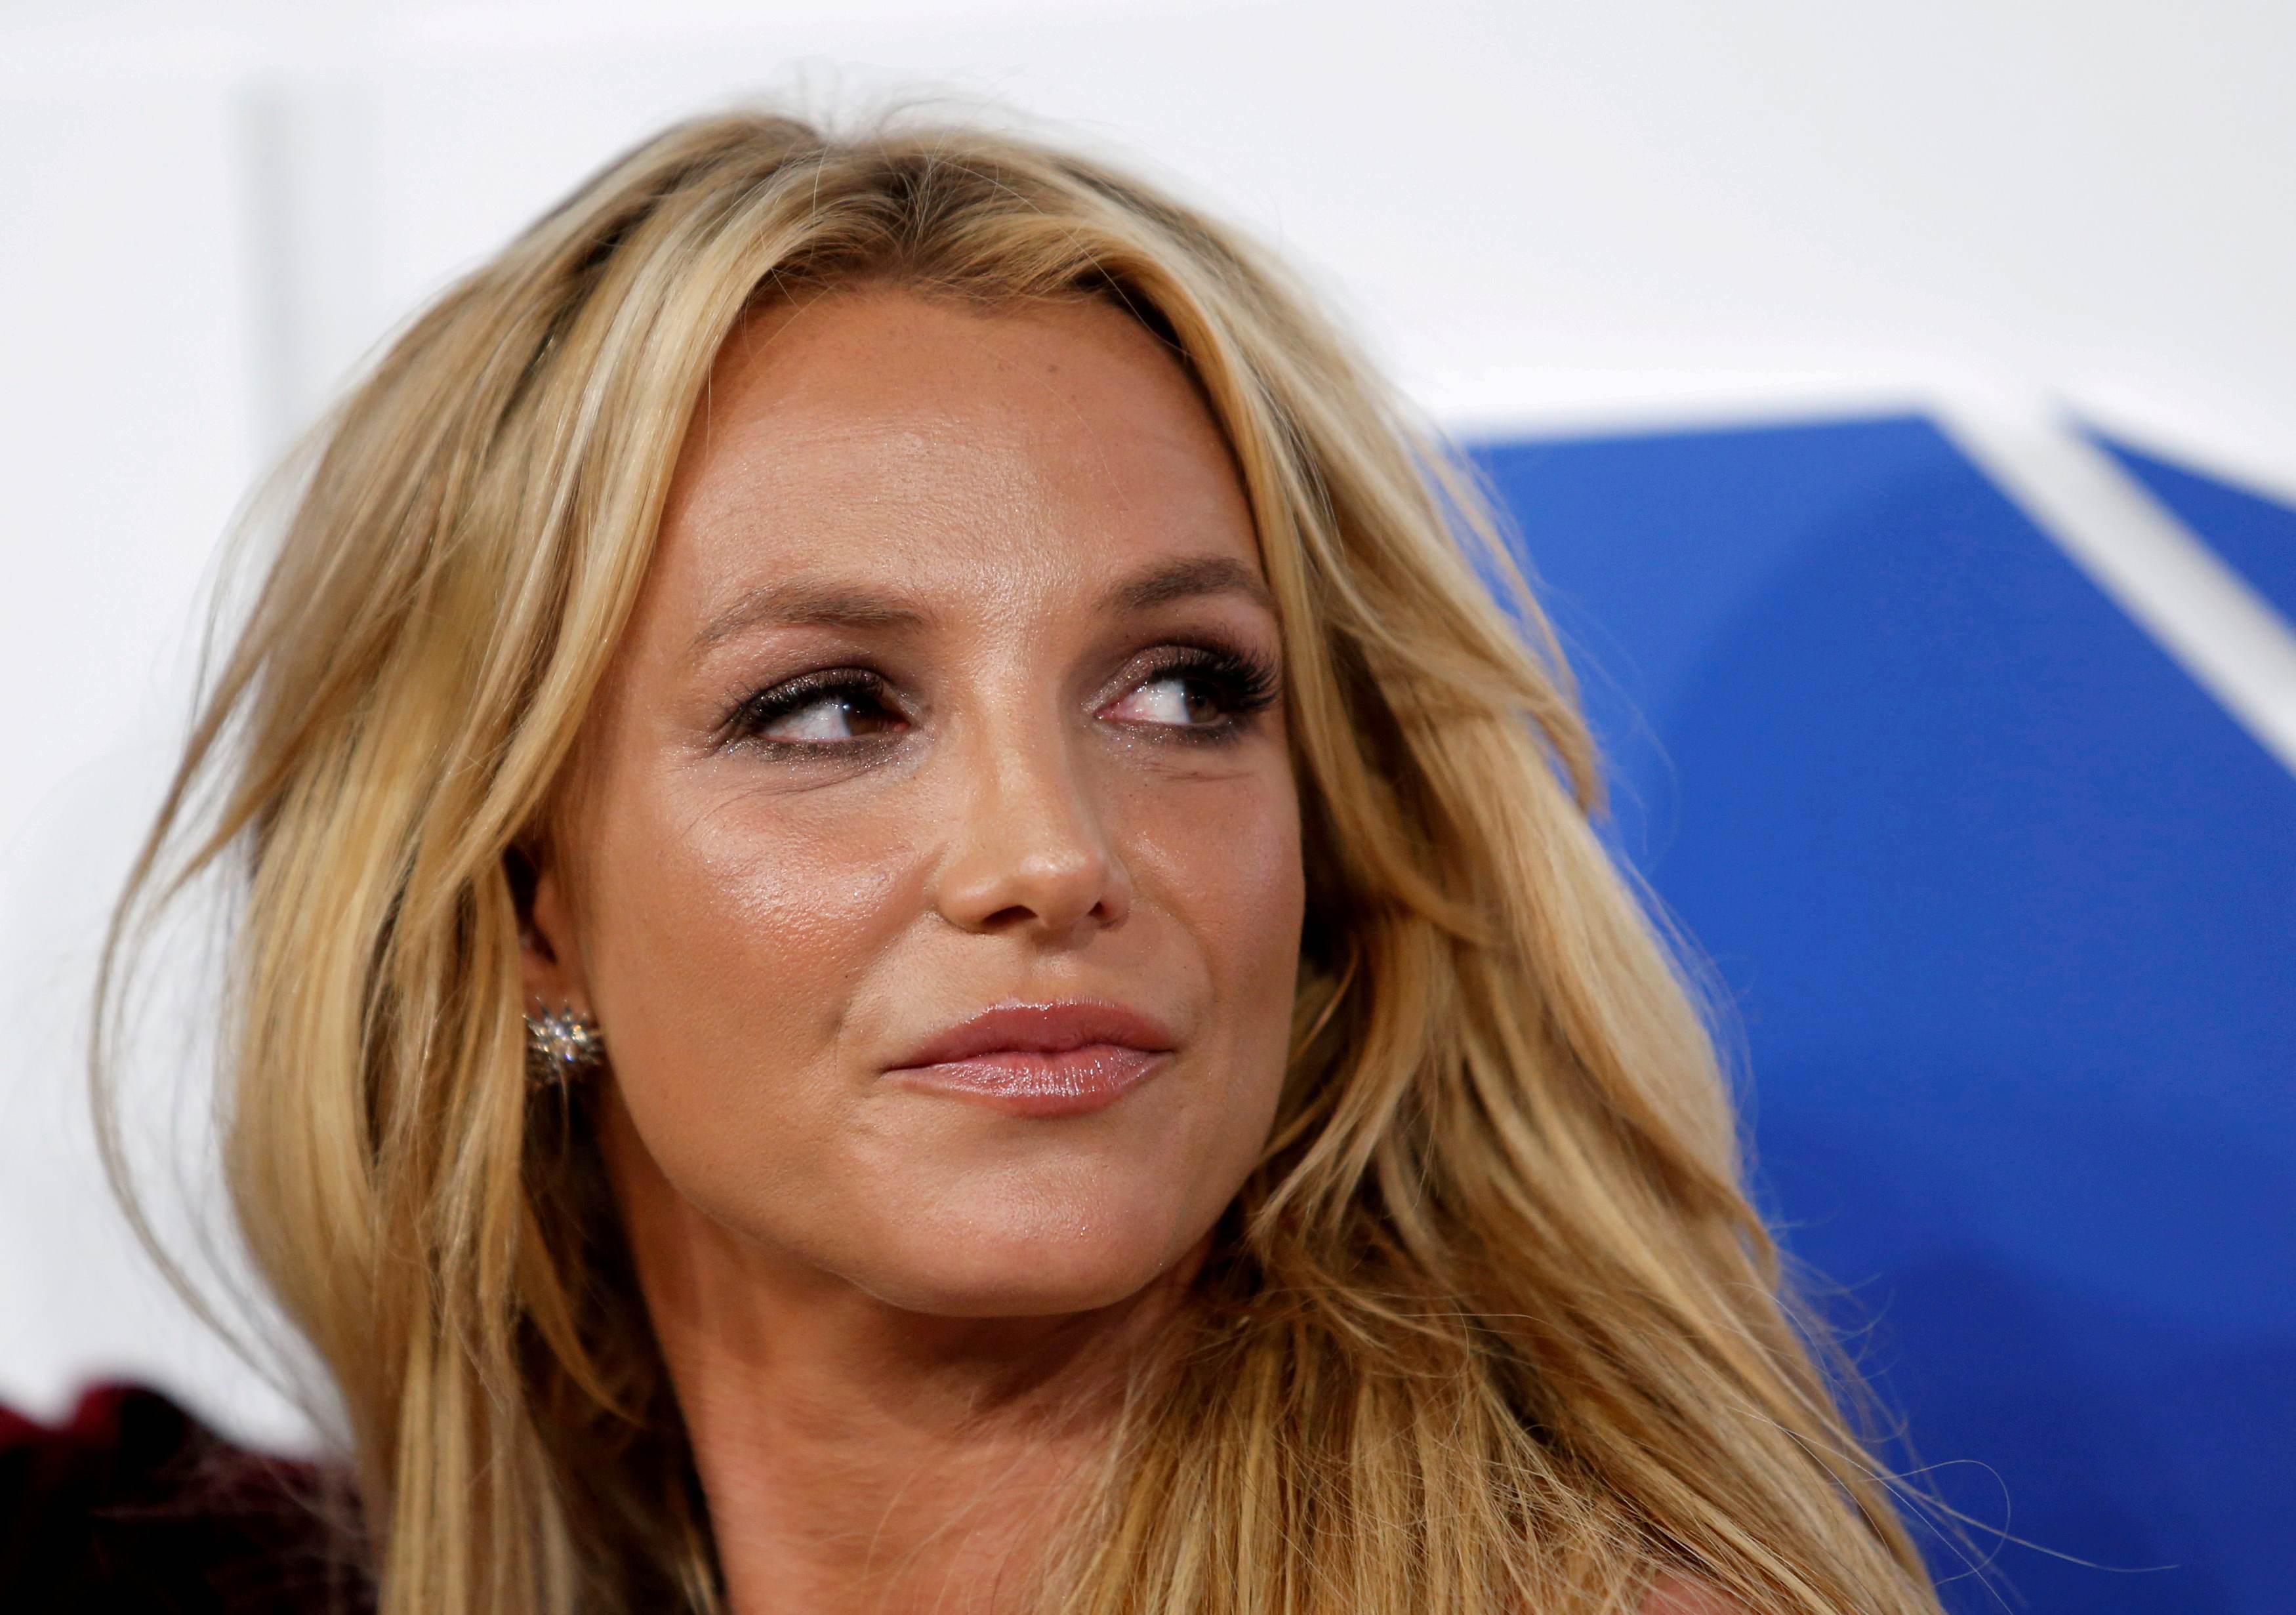 Juíza negou pedido feito para acabar com tutela do pai de Britney Spears